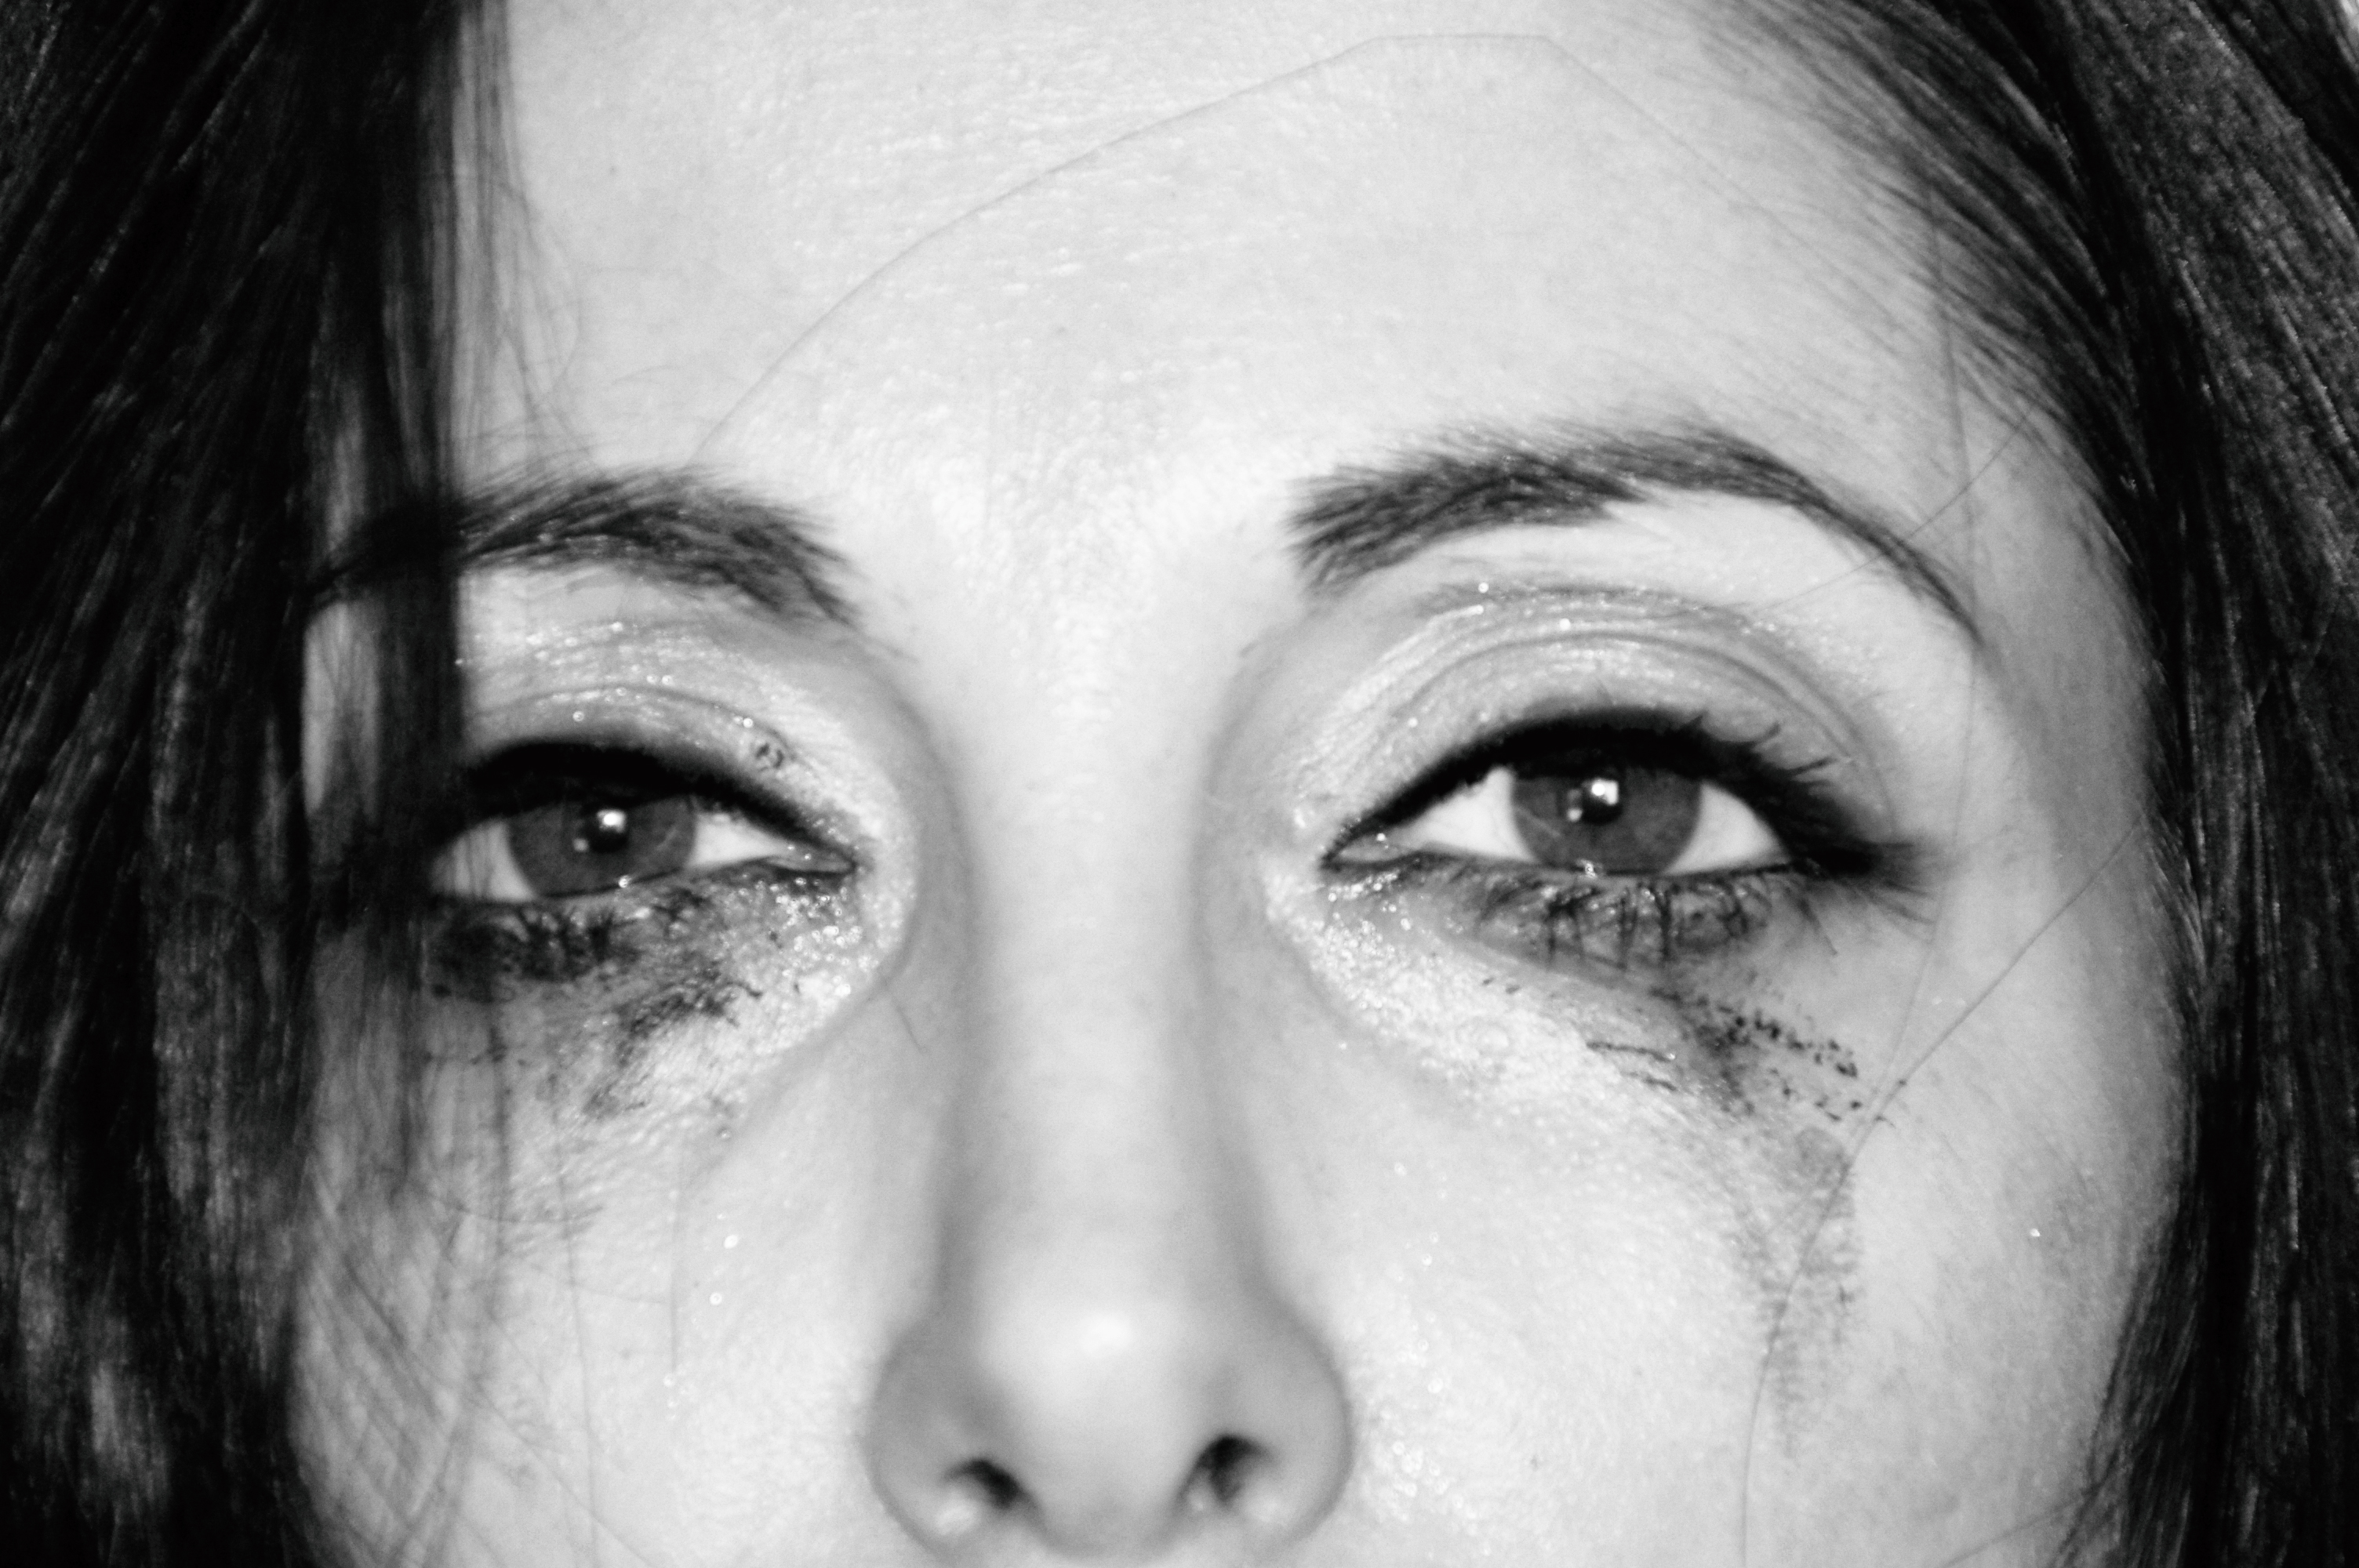 Silversnake Michelle tears